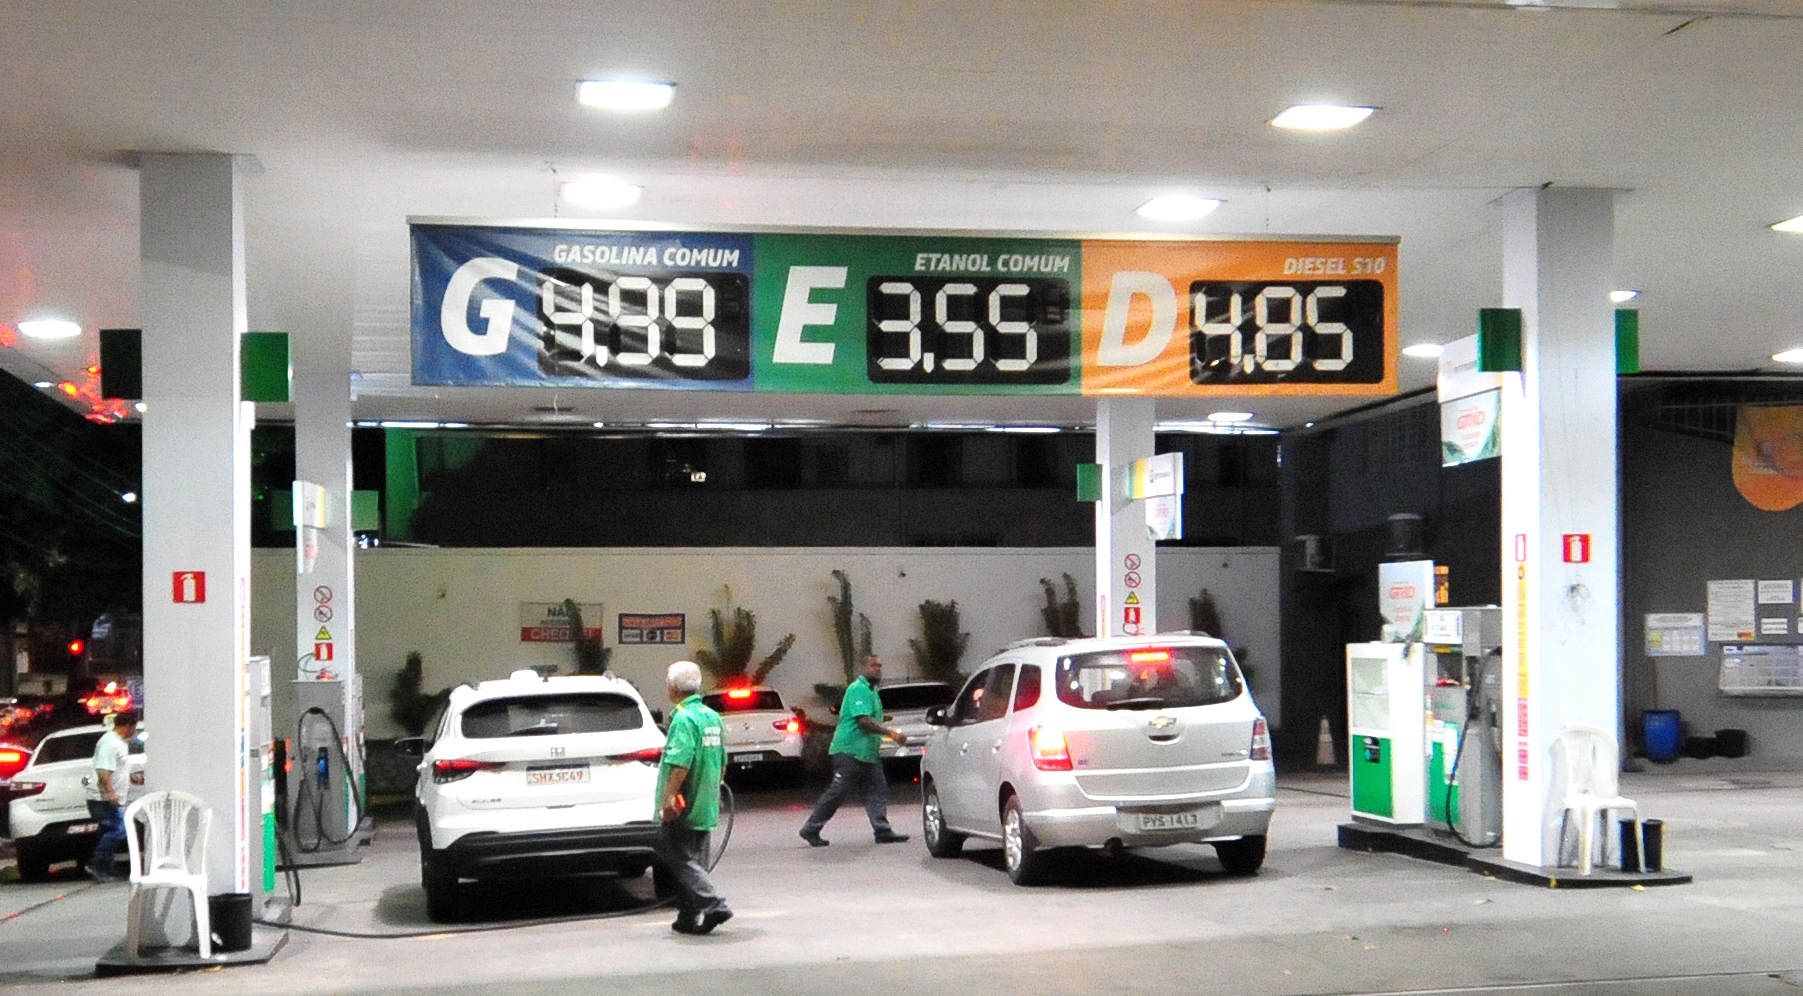 Preço dos combustíveis, com destaque para o diesel.